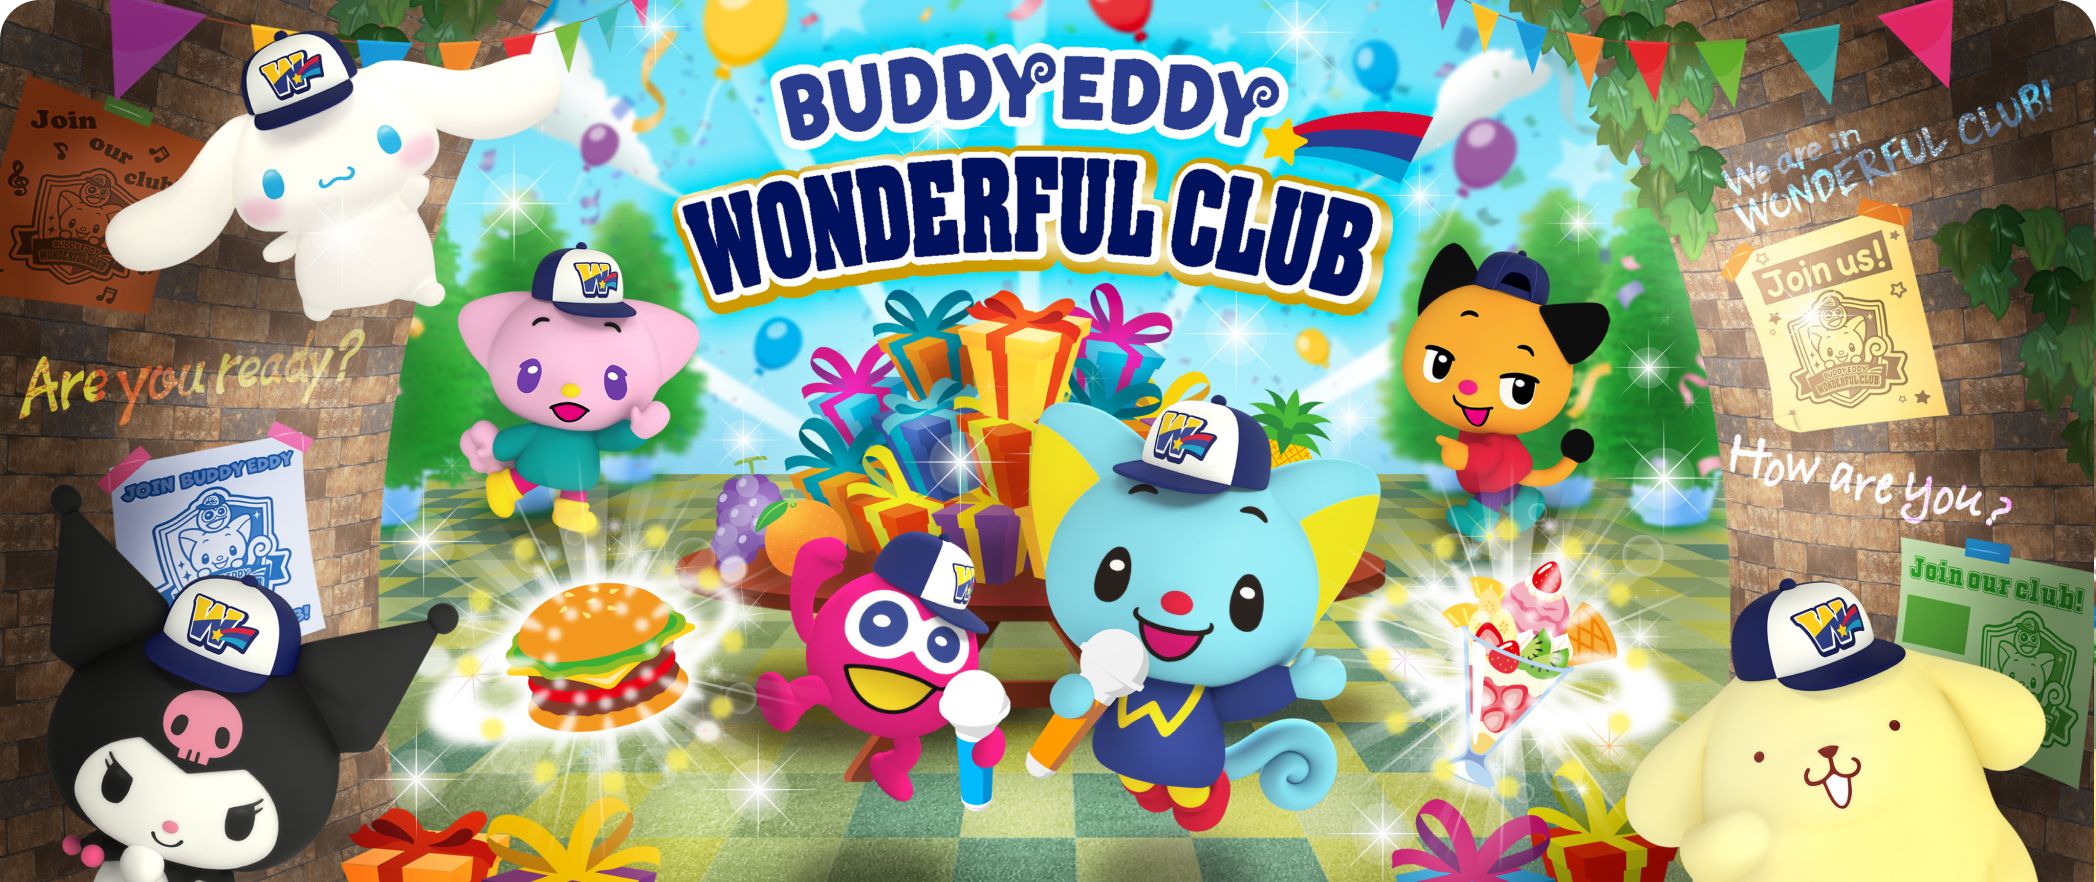 BUDDYEDDY WONDERFUL CLUB